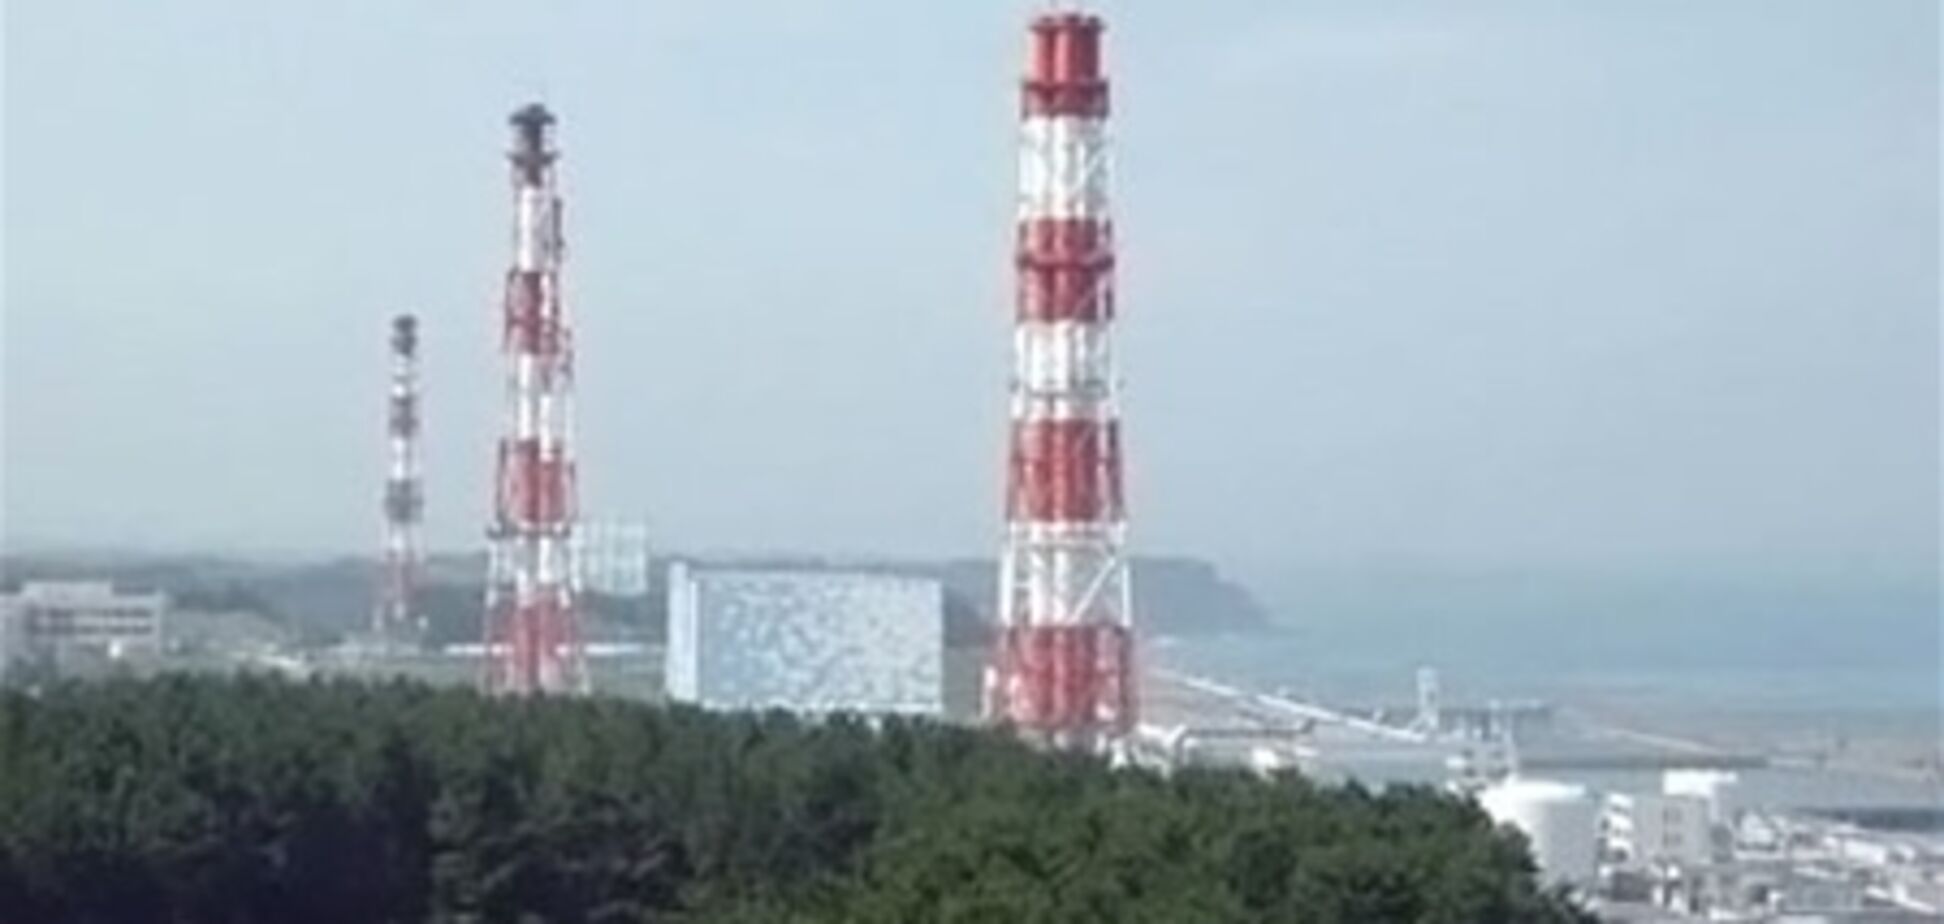 Как произошла авария на 'Фукусиме'? Детали и подробности в картинках